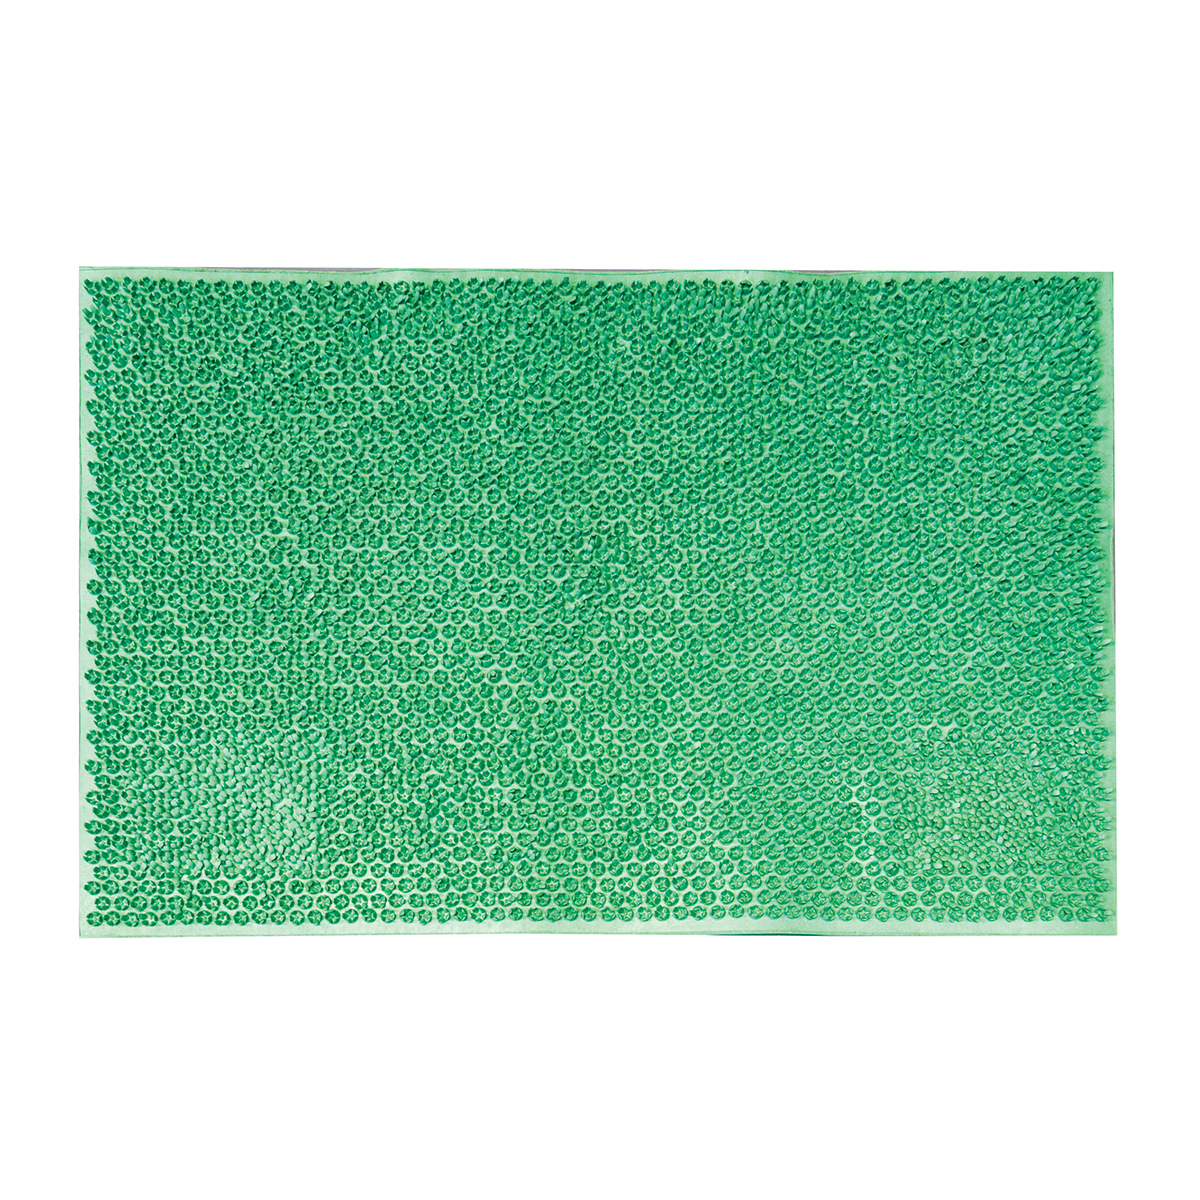 91055741 Коврик грязезащитный Резиновый Травка (1/10) 40x60 см цвет Зеленый STLM-0460509 SUNSTEP